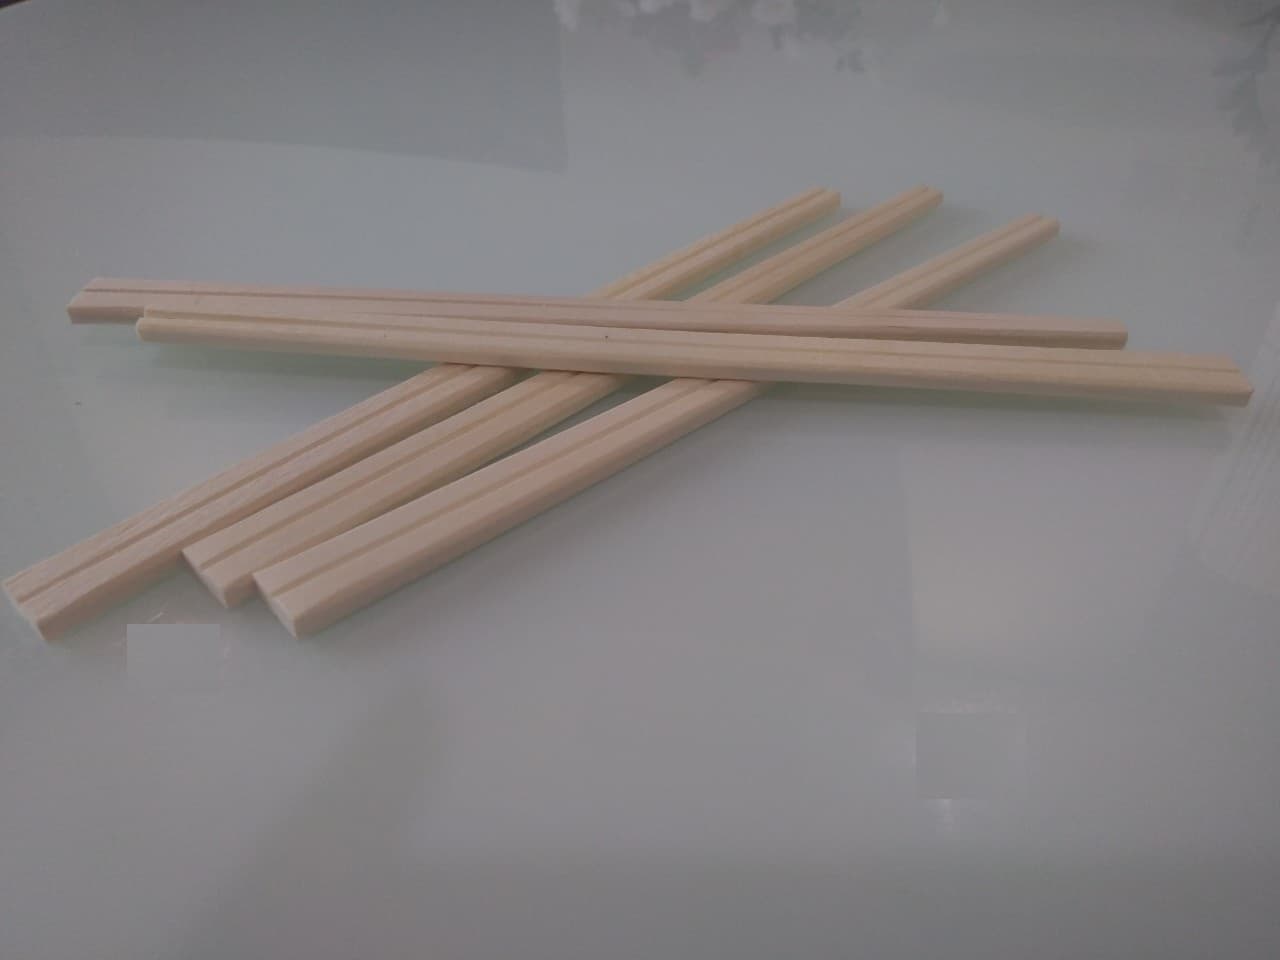 Wooden chopstick disposable